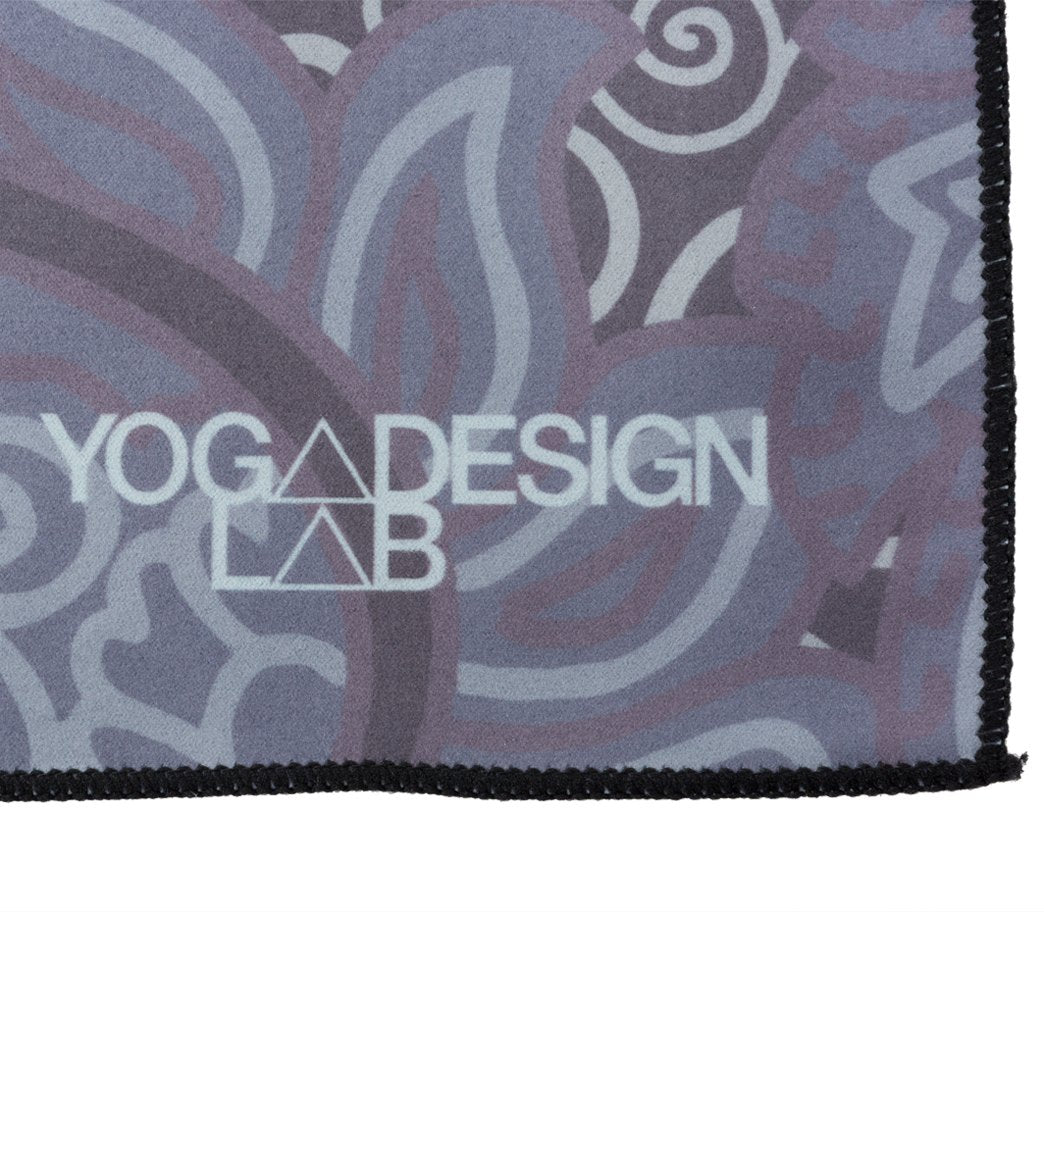 Yoga Design Lab Paisley Hot Yoga Towel at